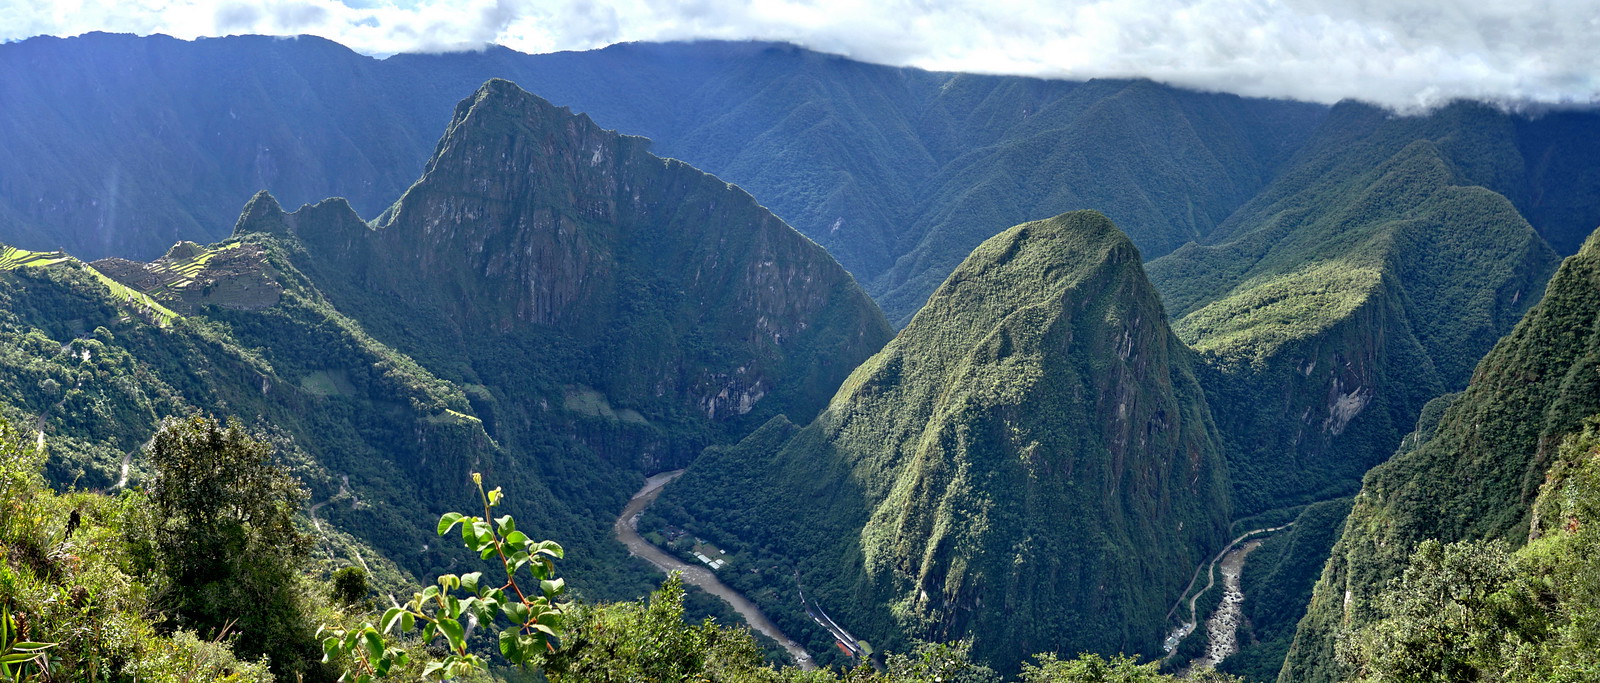 Machu Picchu - a stunning site